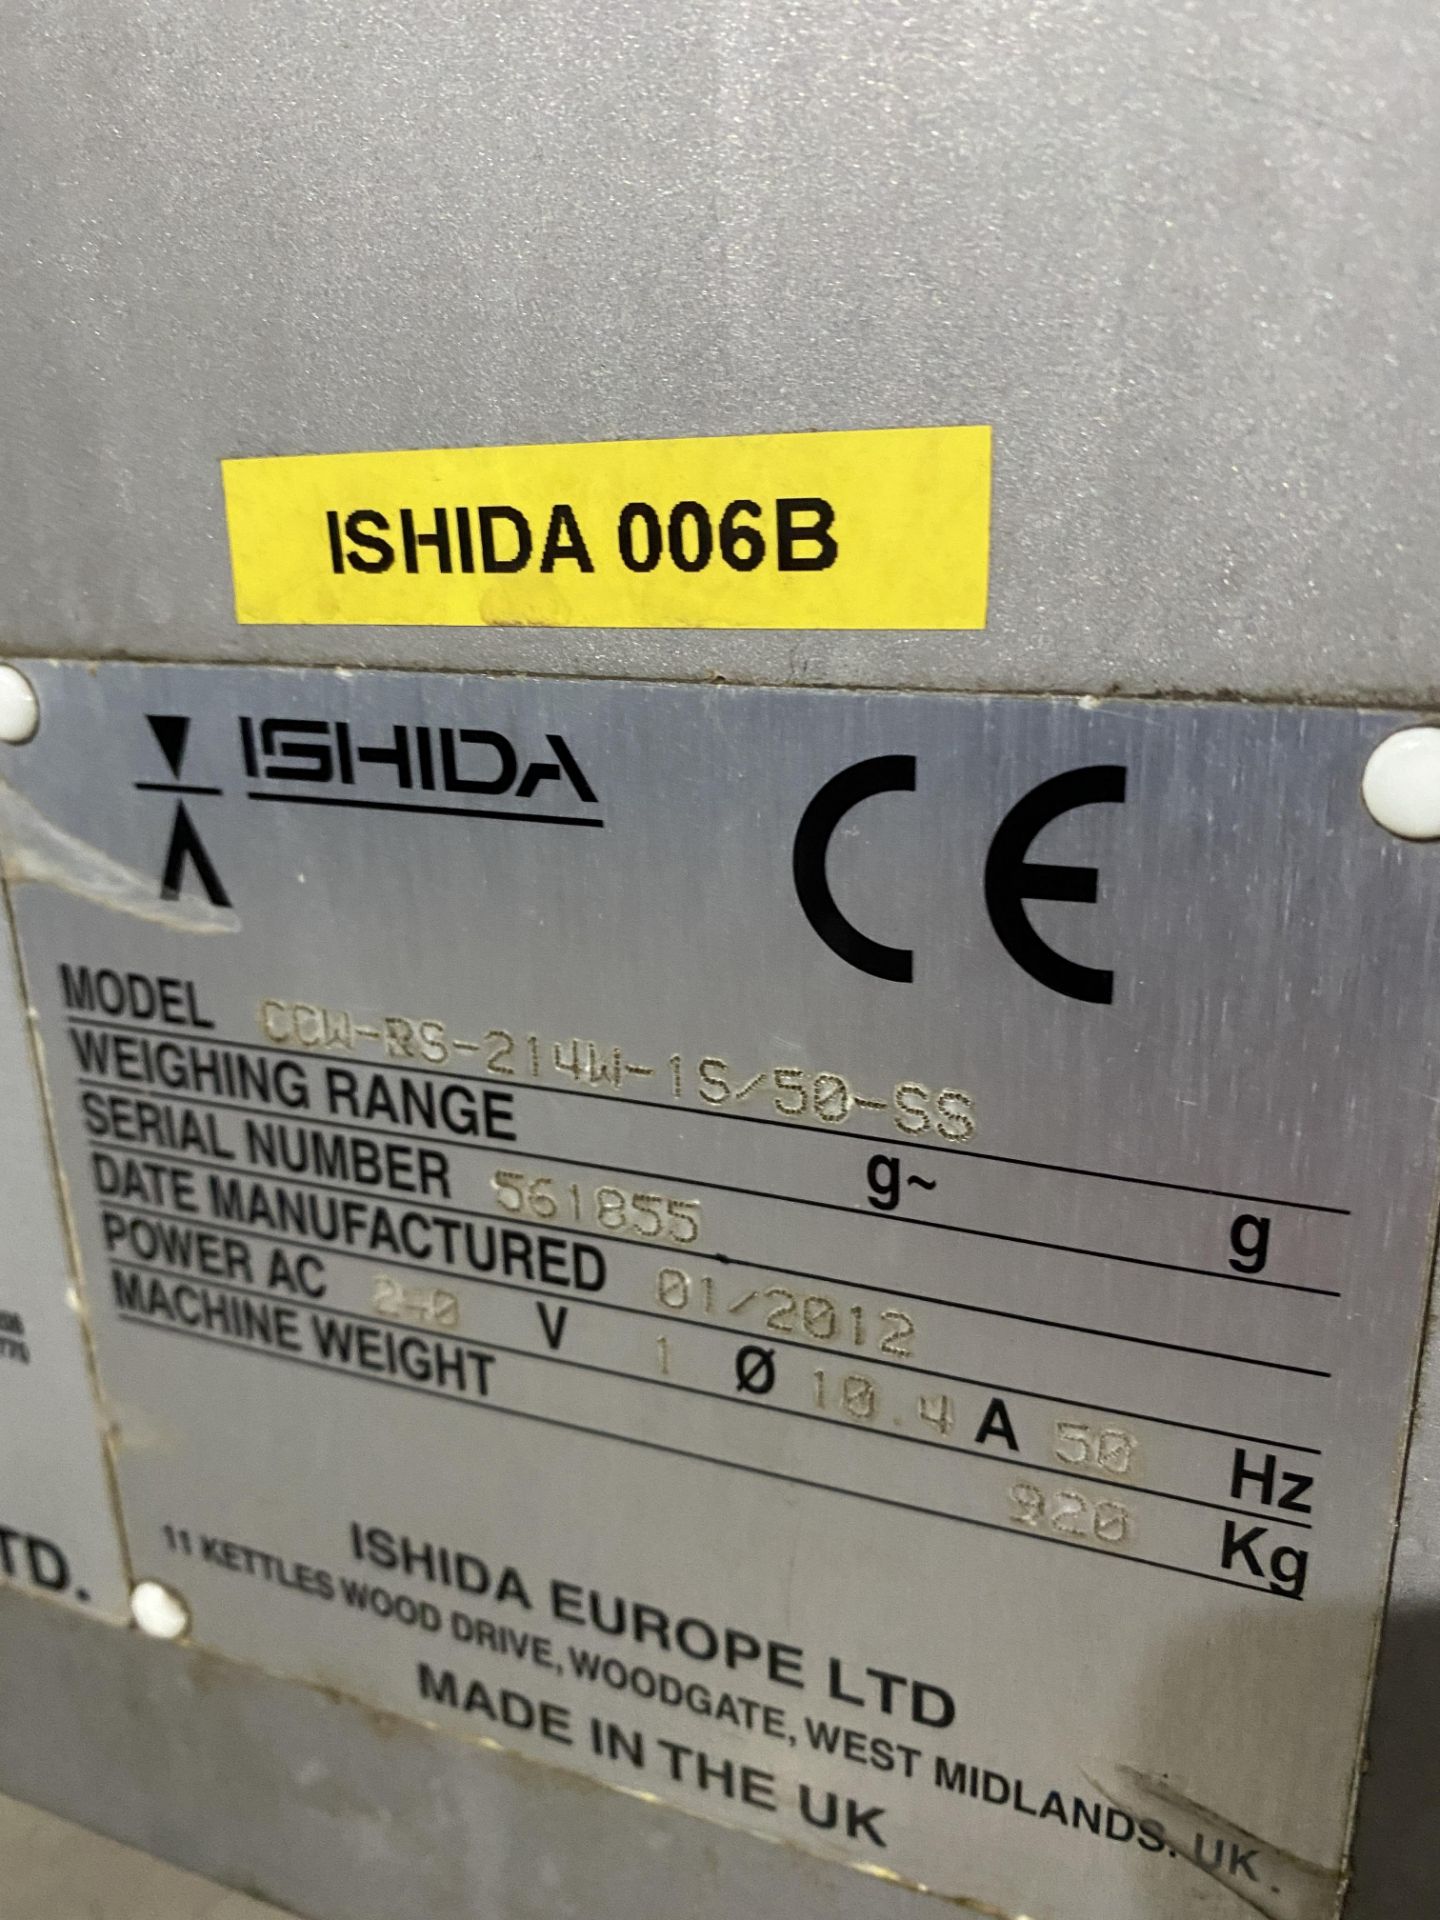 Ishida multihead weigher - Image 3 of 4